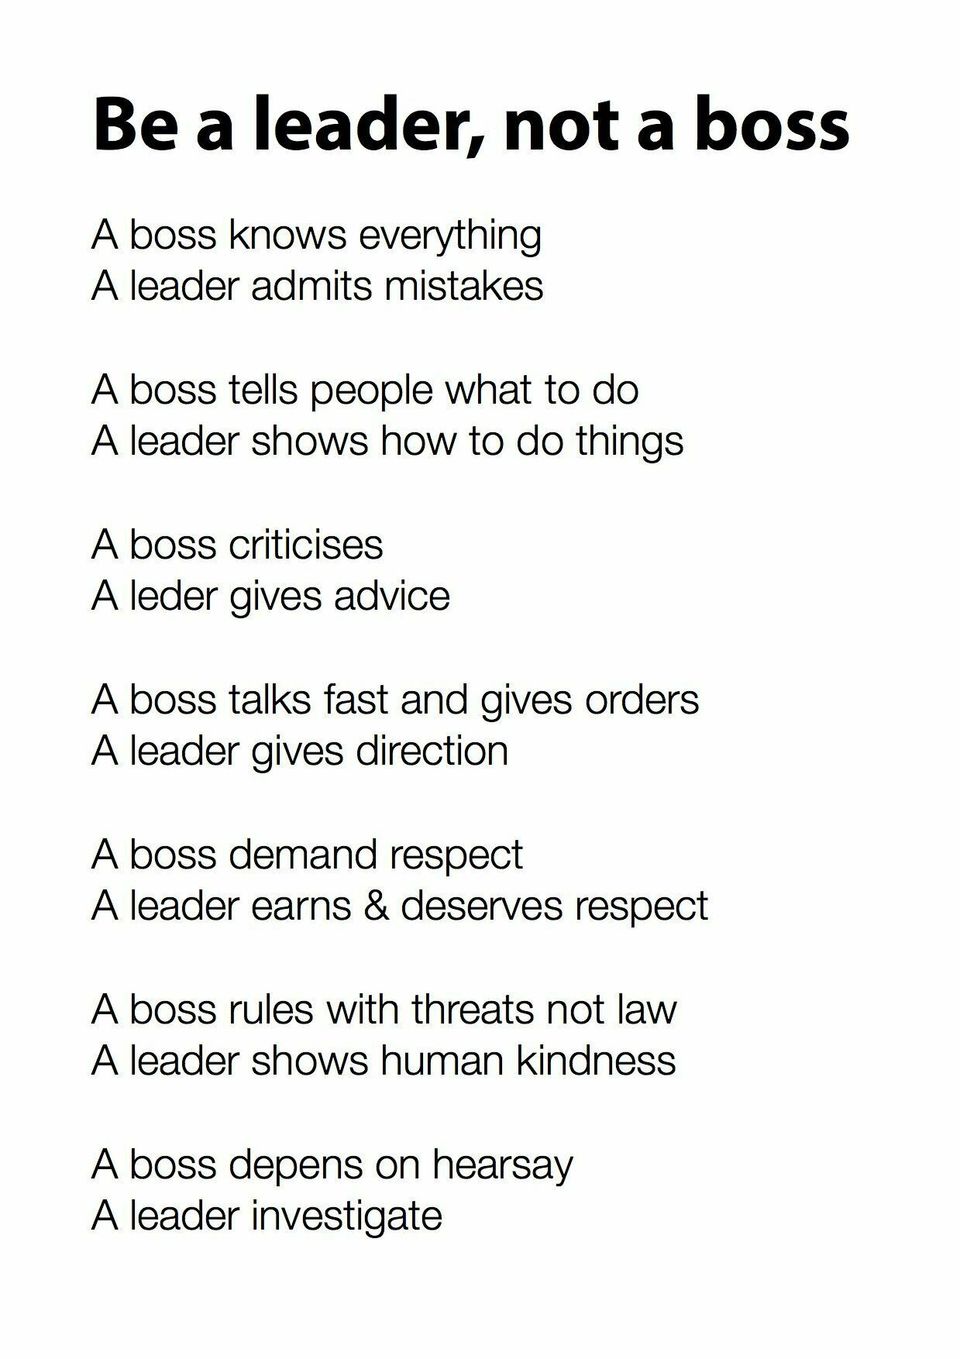 Boss vs leader2